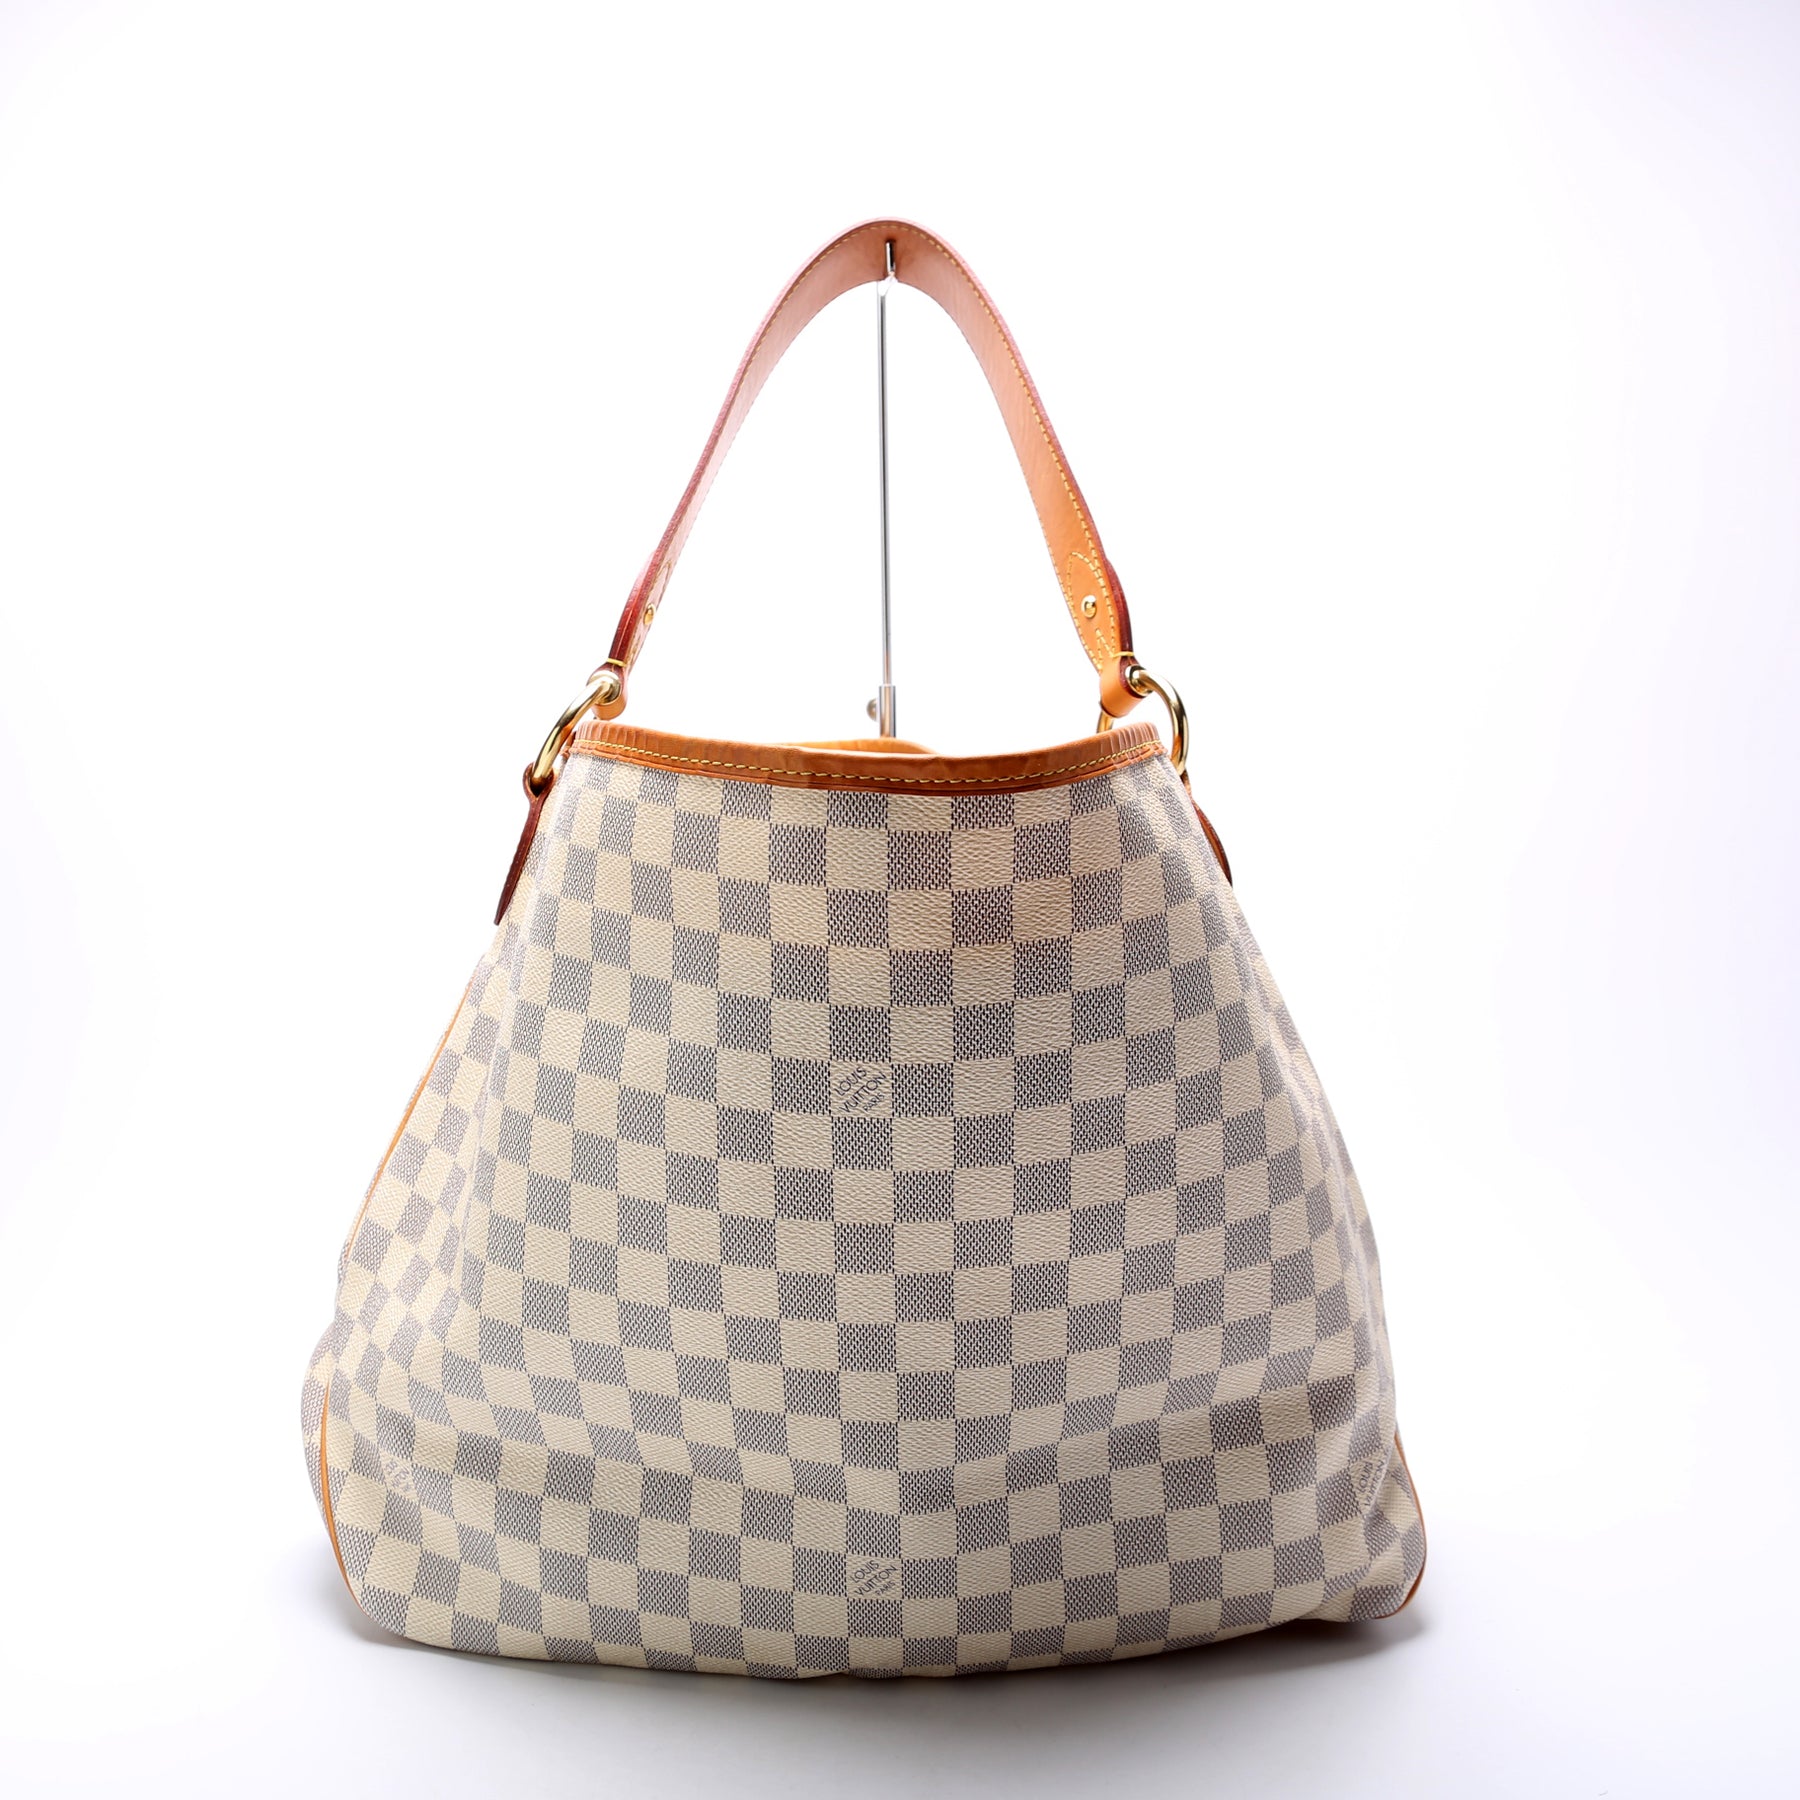 Louis Vuitton Delightful MM NM Damier Ebene Hobo Bag